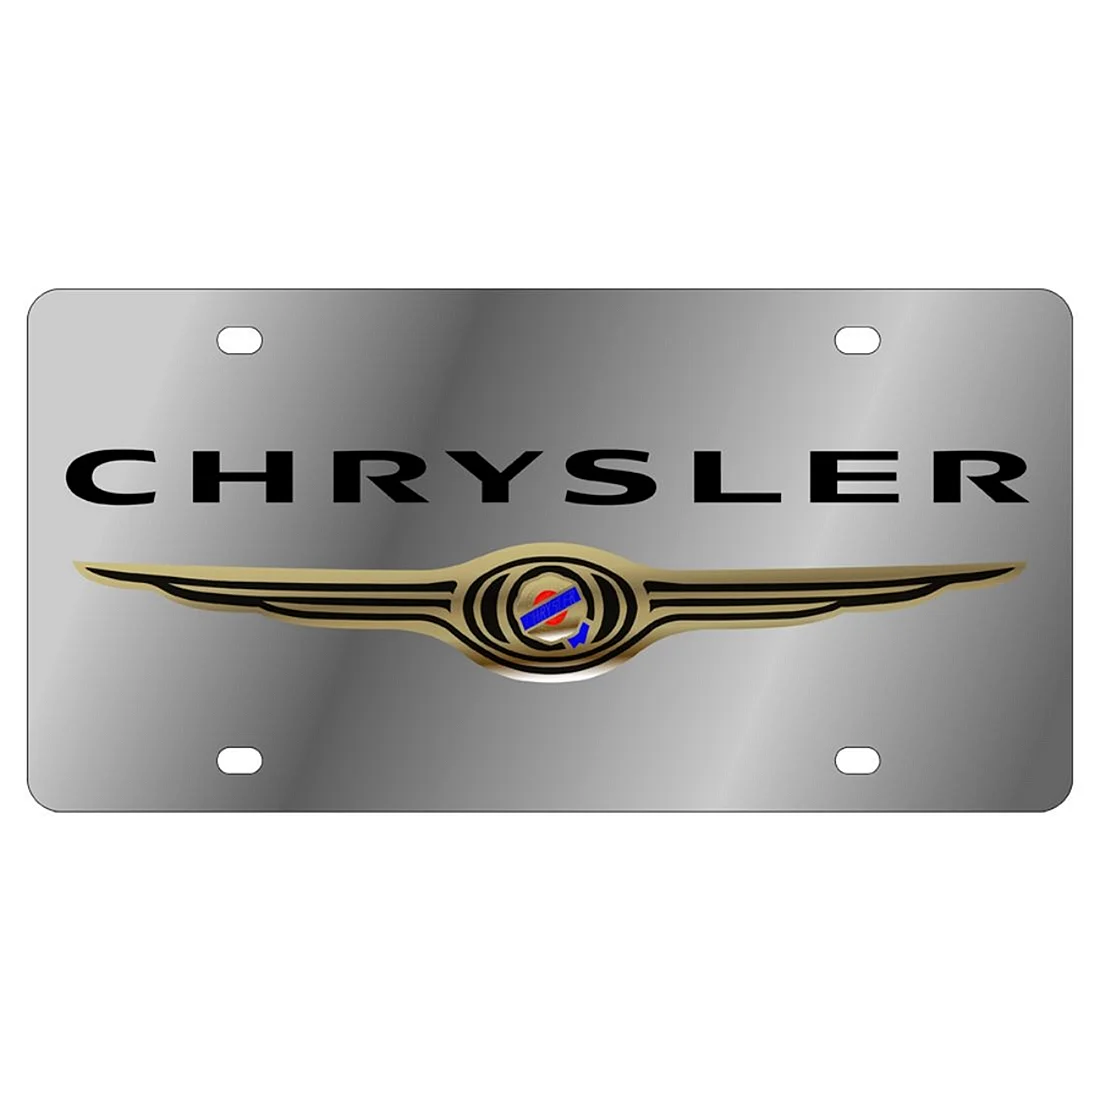 Chrysler эмблема